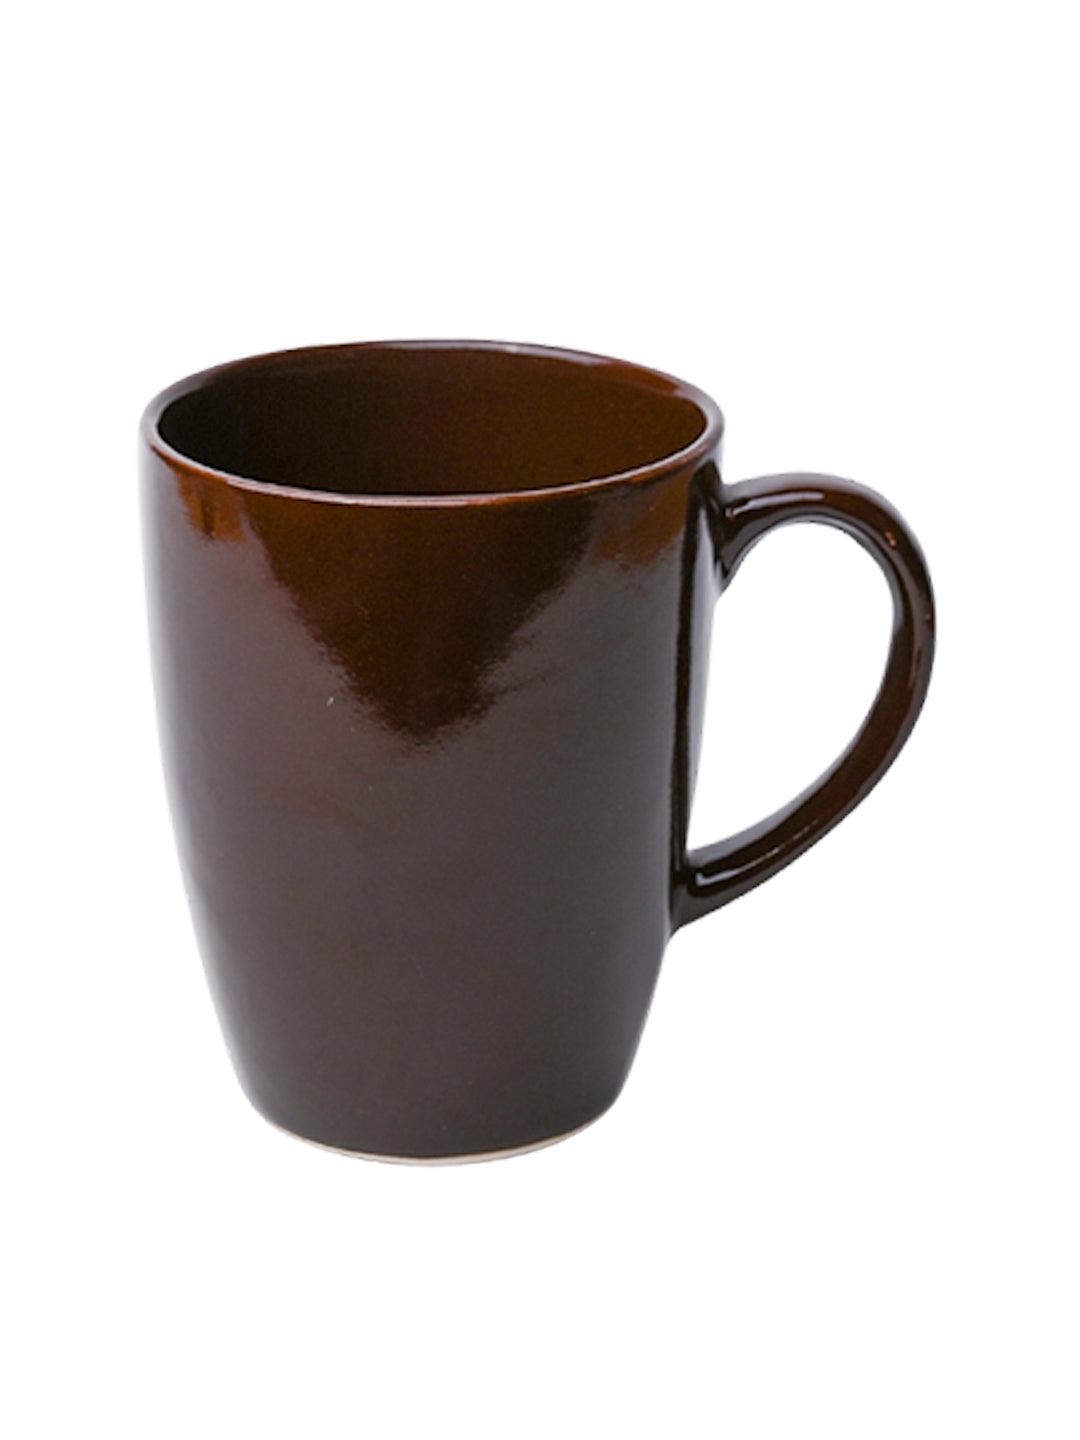 VON CASA Ceramic Coffee Mug - 320 Ml, Brown - MARKET 99